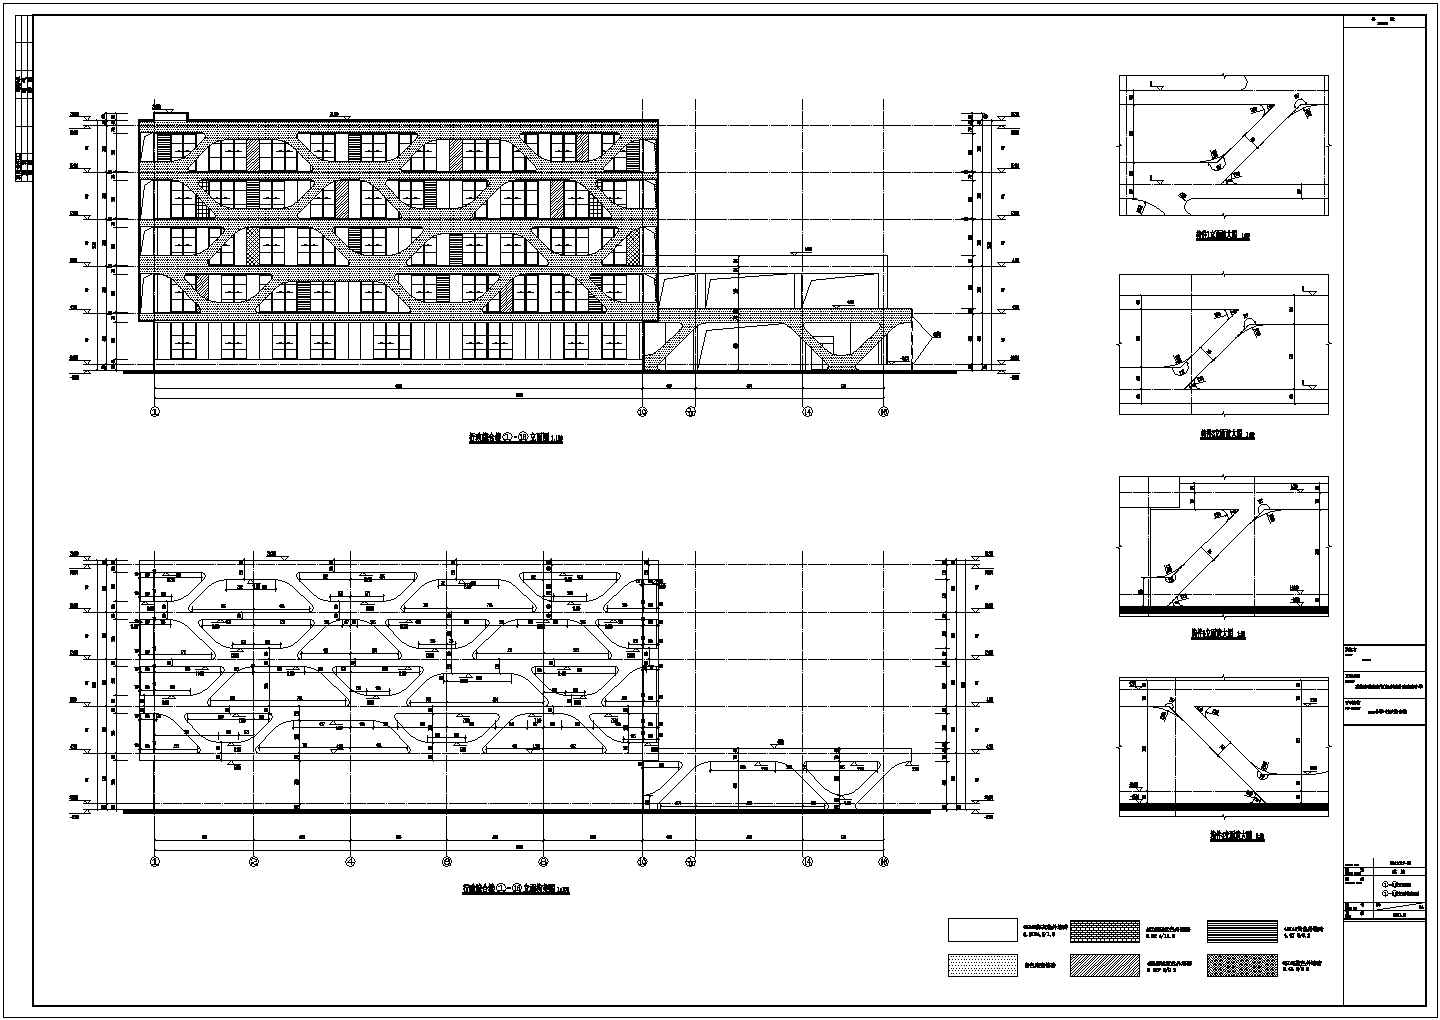 四川省小学行政综合教学楼全专业设计施工图CAD